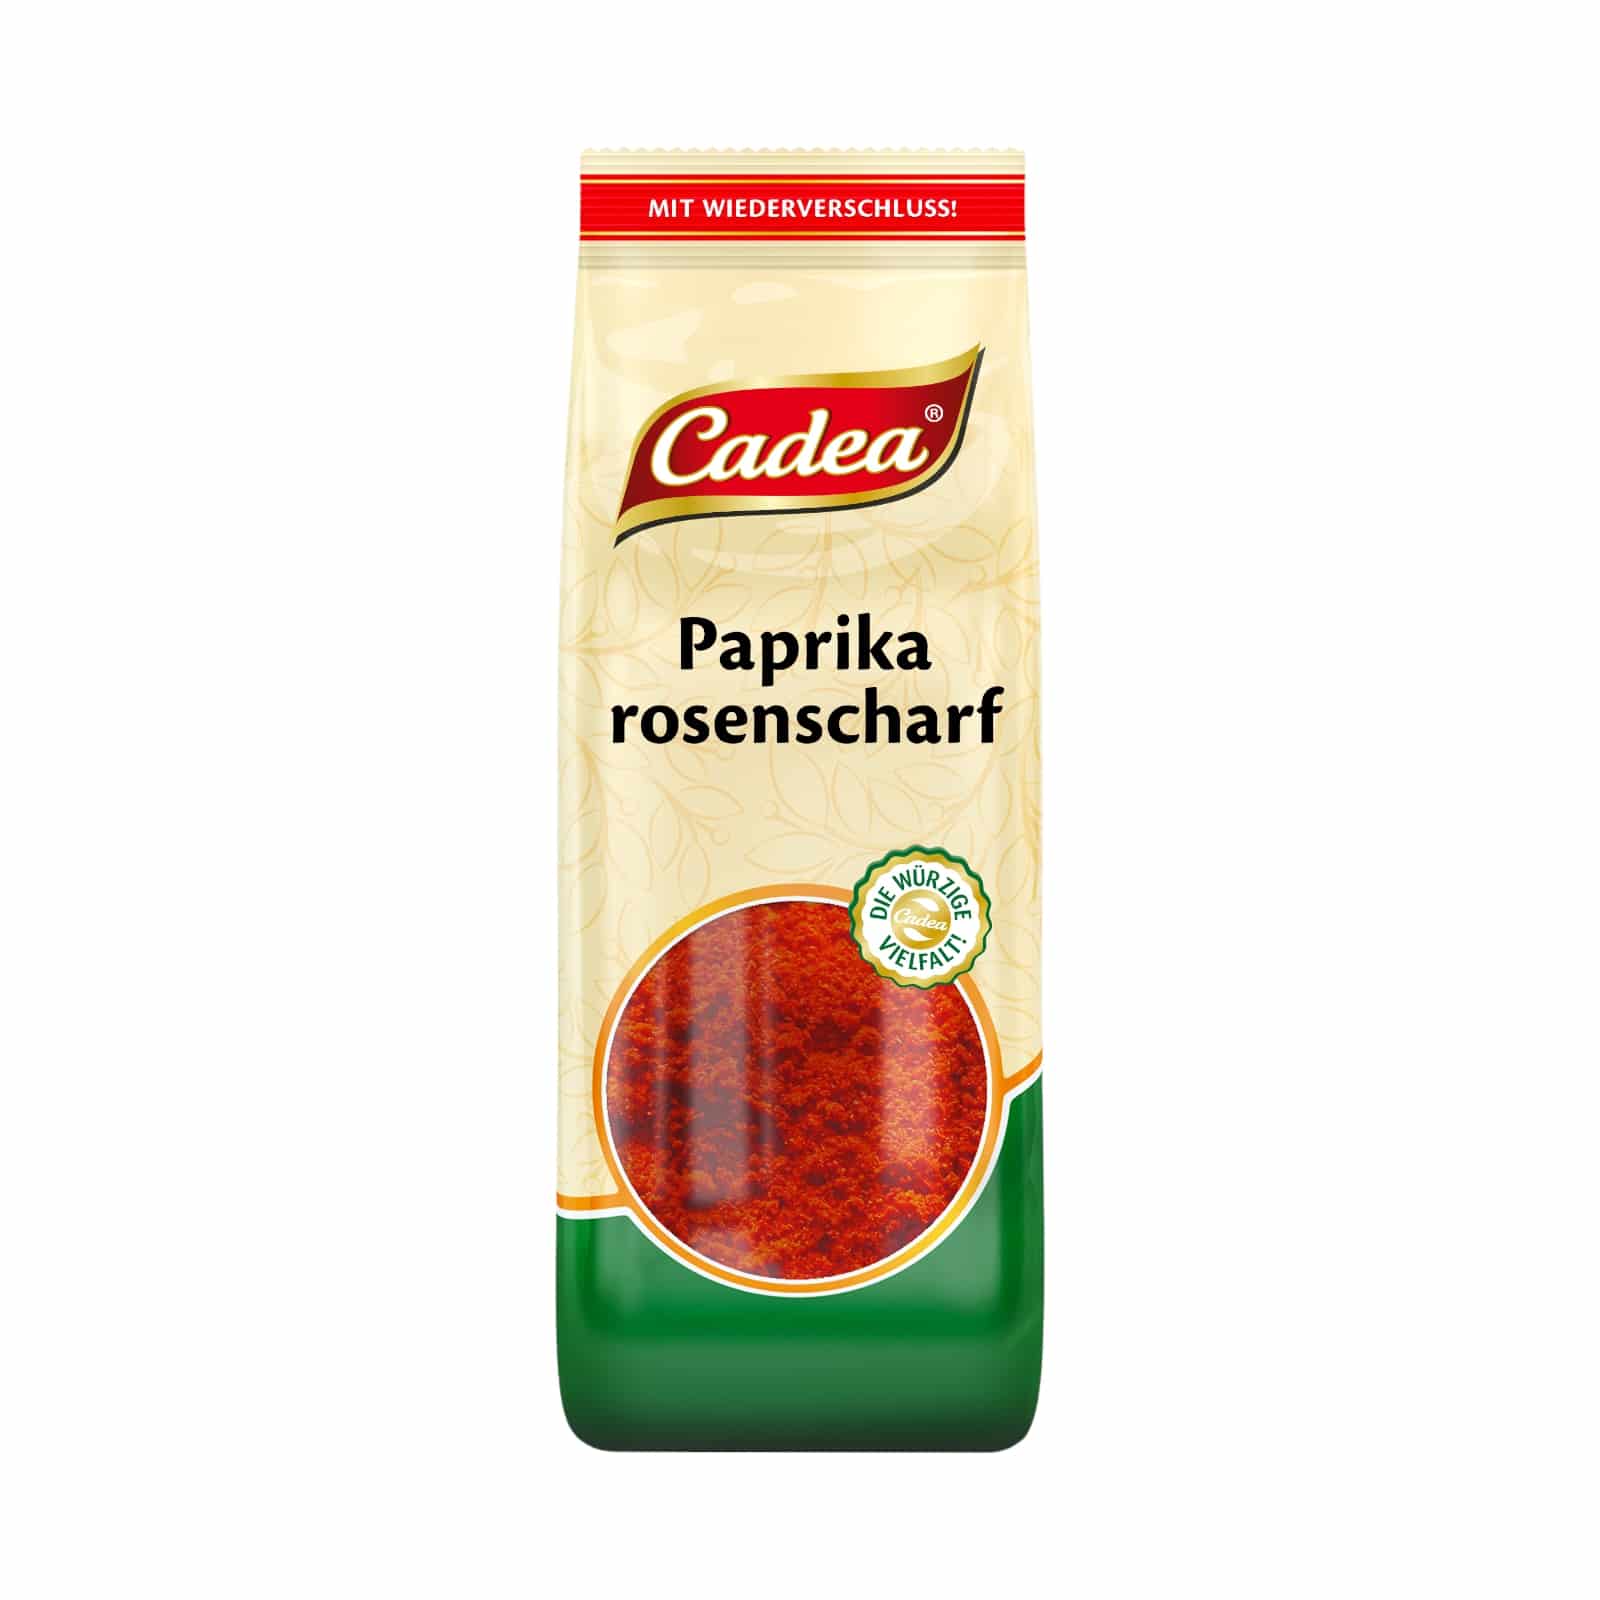 CADEA Paprika rosenscharf 70g BT